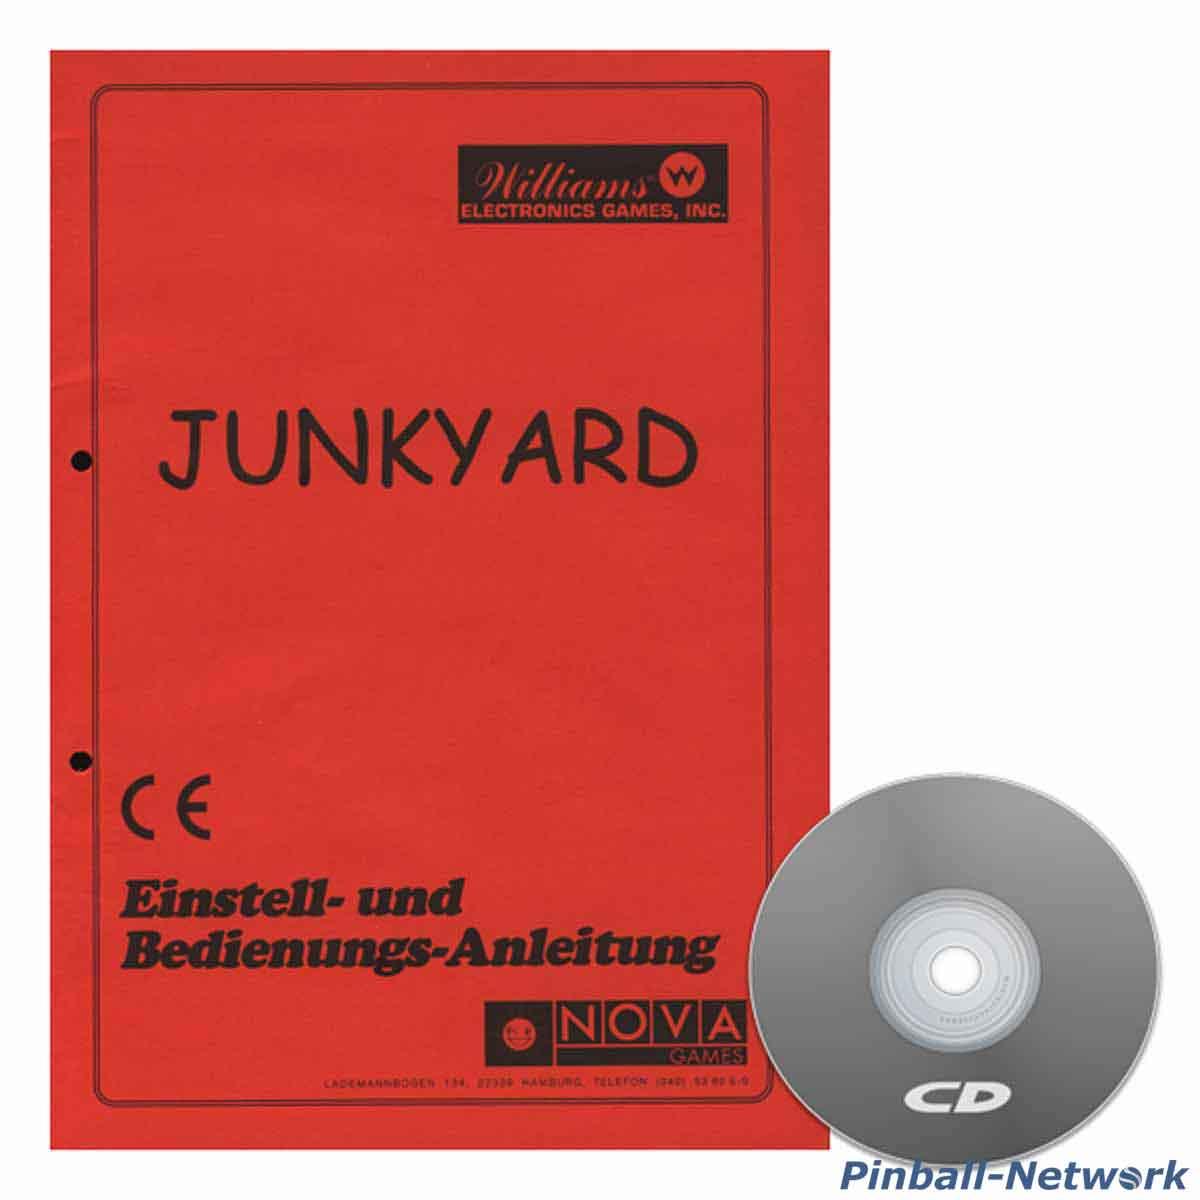 Junk Yard Einstell- und Bedienungs-Anleitung